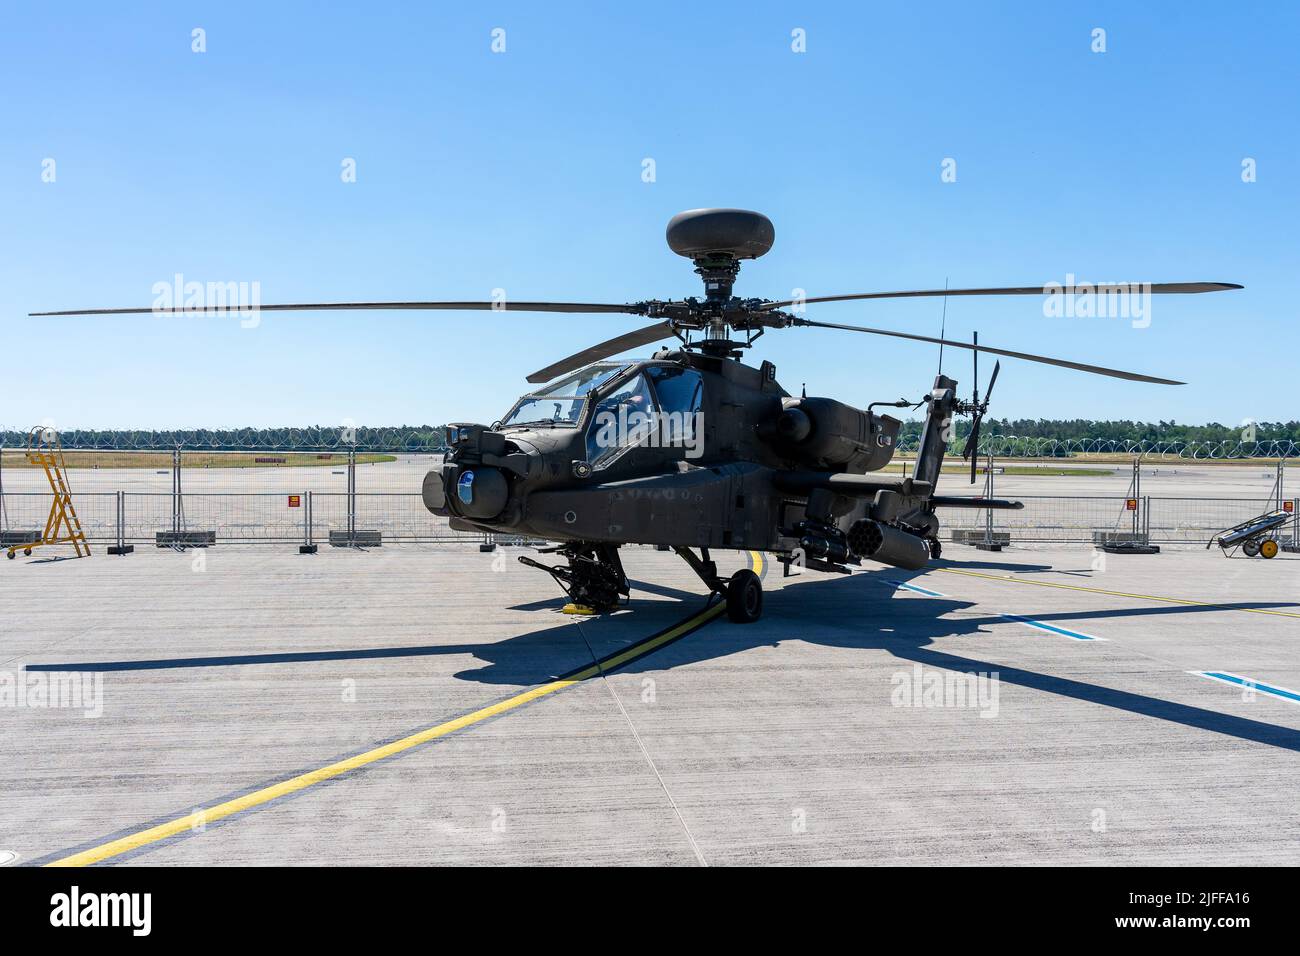 BERLÍN, ALEMANIA - 23 DE JUNIO de 2022: Helicóptero de ataque Boeing AH-64D Apache Longbow. Ejército DE LOS EE.UU. Exposición ILA Berlin Air Show 2022 Foto de stock